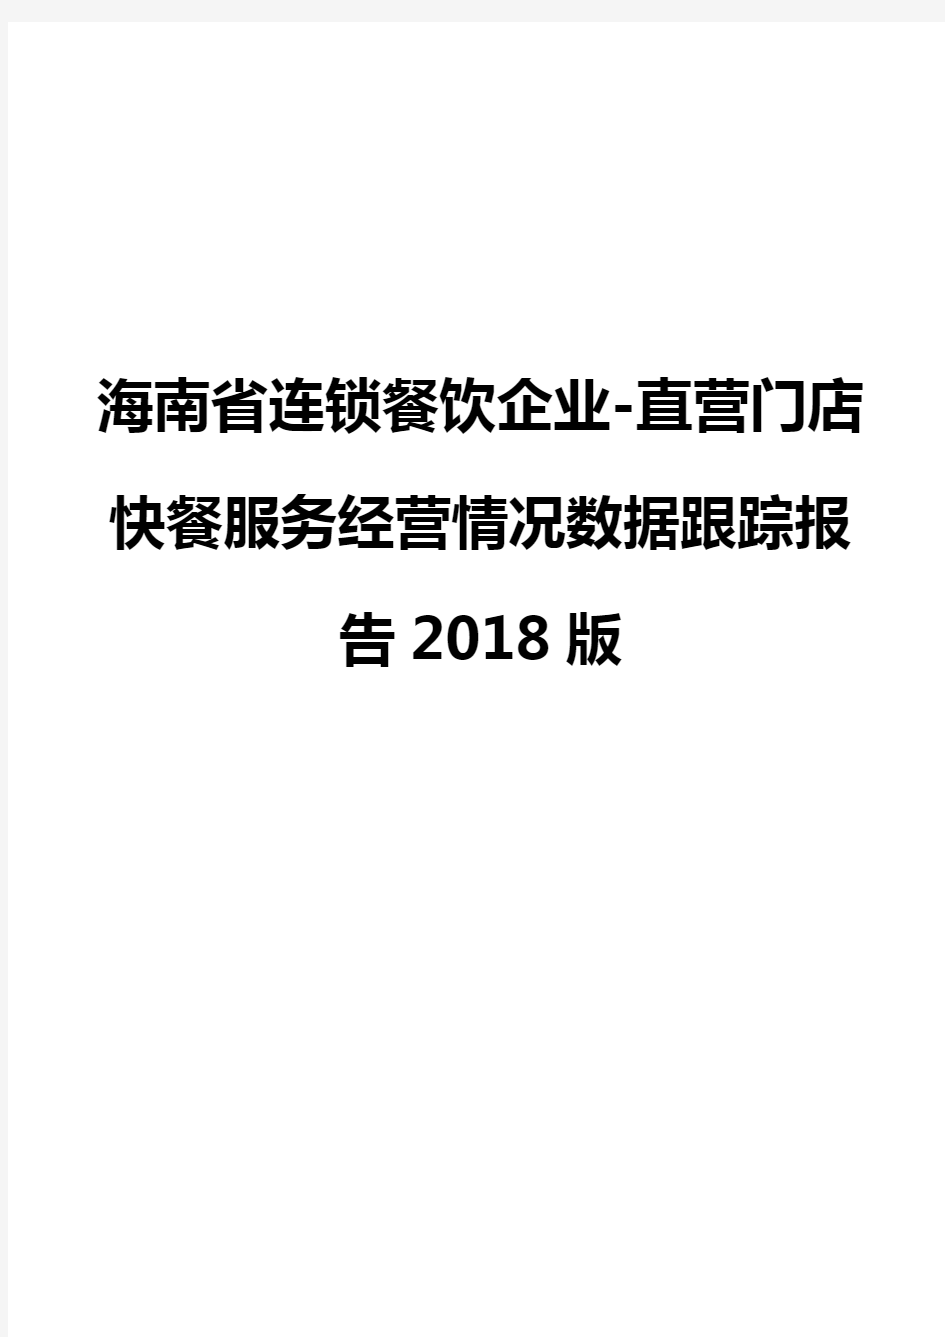 海南省连锁餐饮企业-直营门店快餐服务经营情况数据跟踪报告2018版